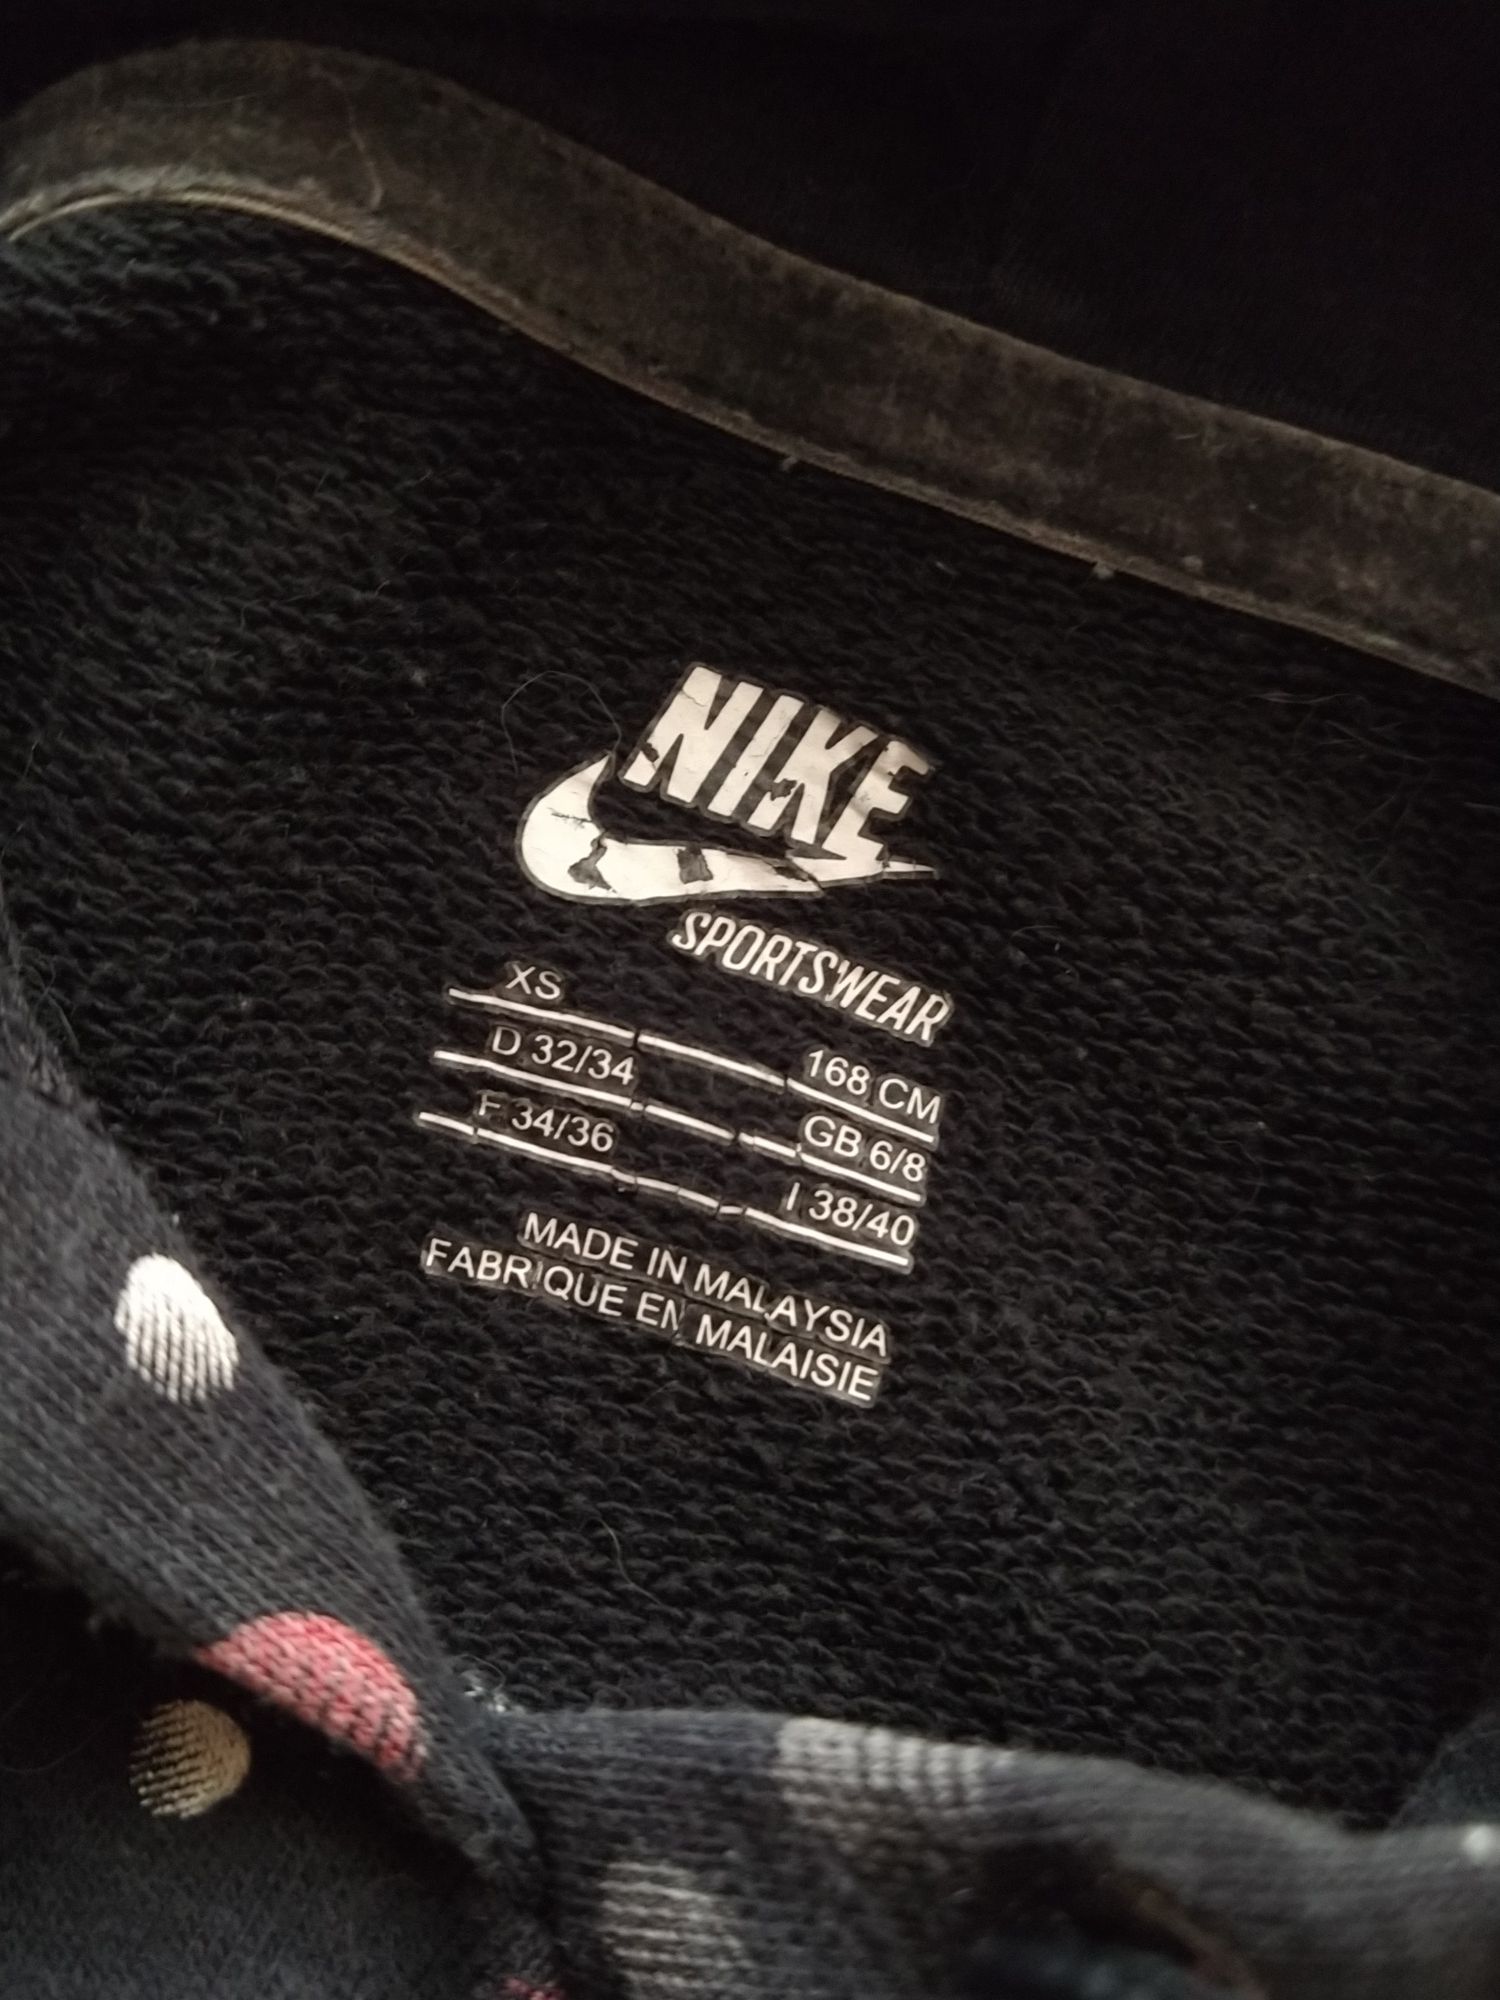 Czarna bluza damska Nike w kropki r. XS 34